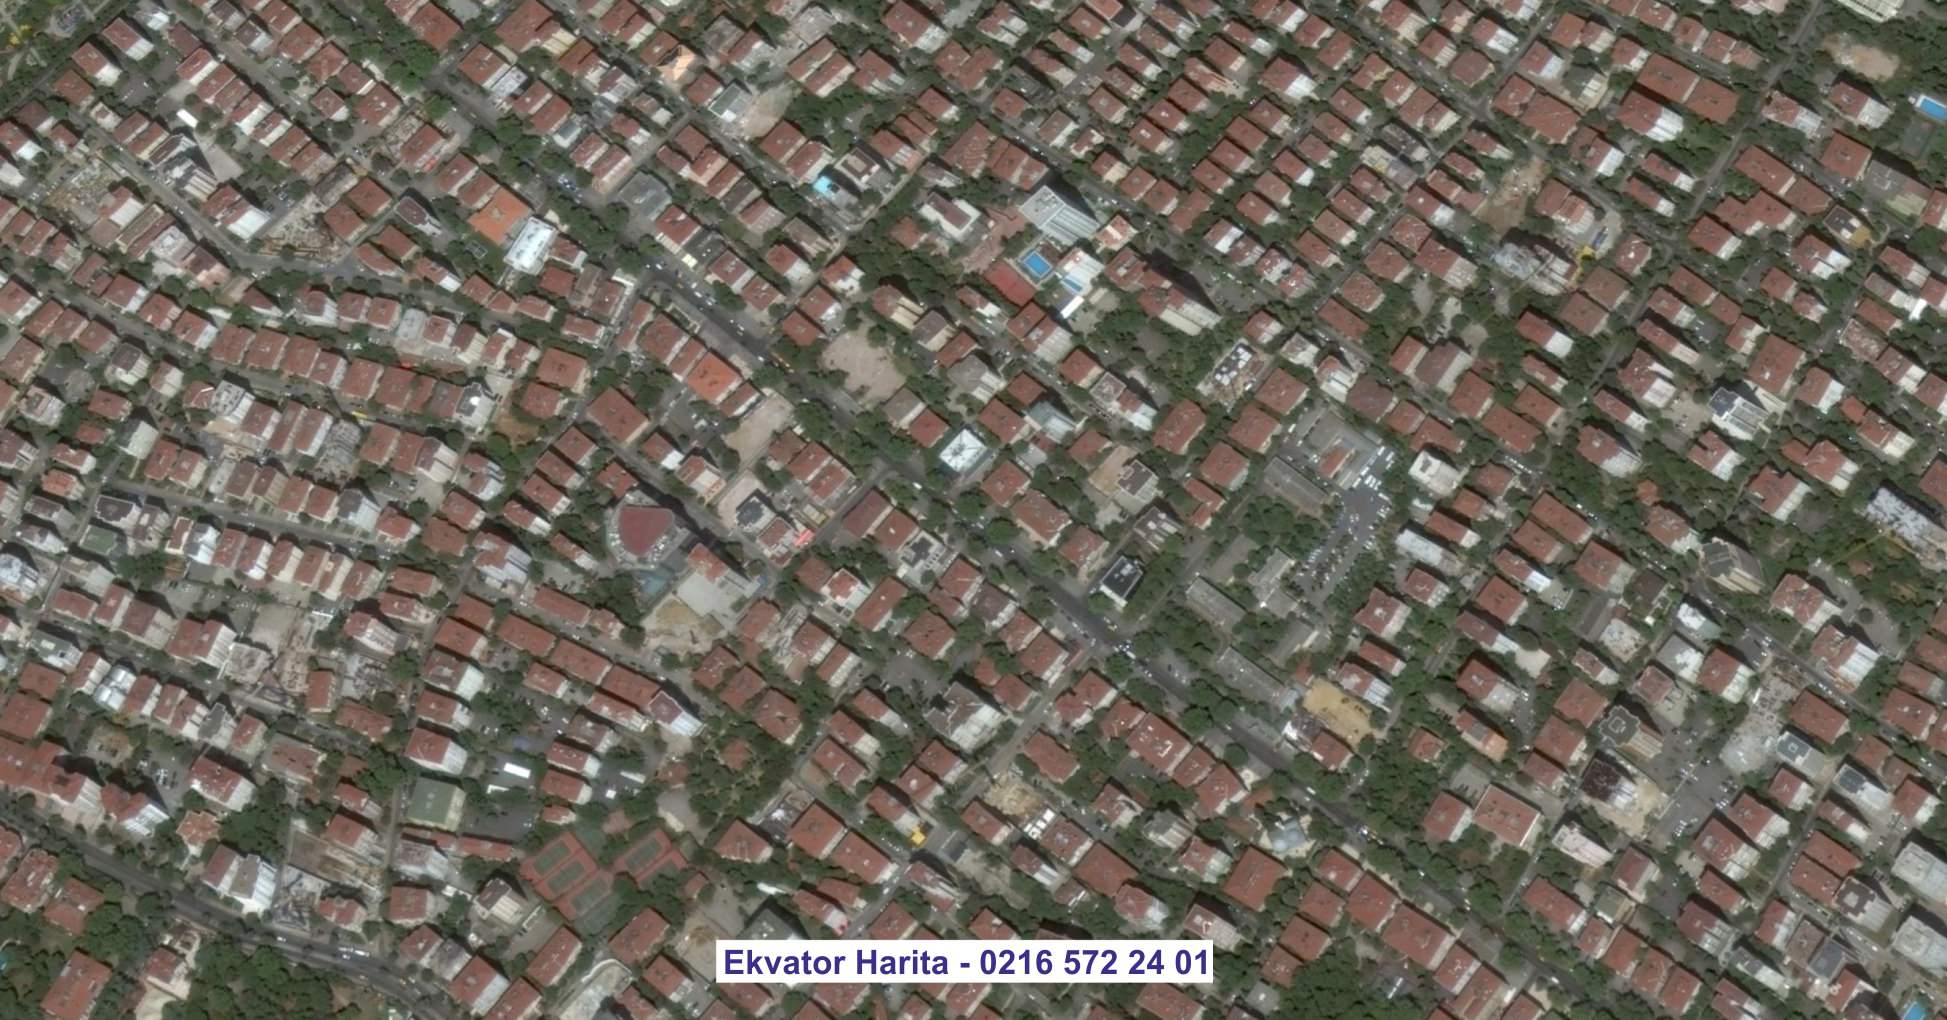 Nevşehir Uydu Görüntüsü Örnek Fotoğrafı